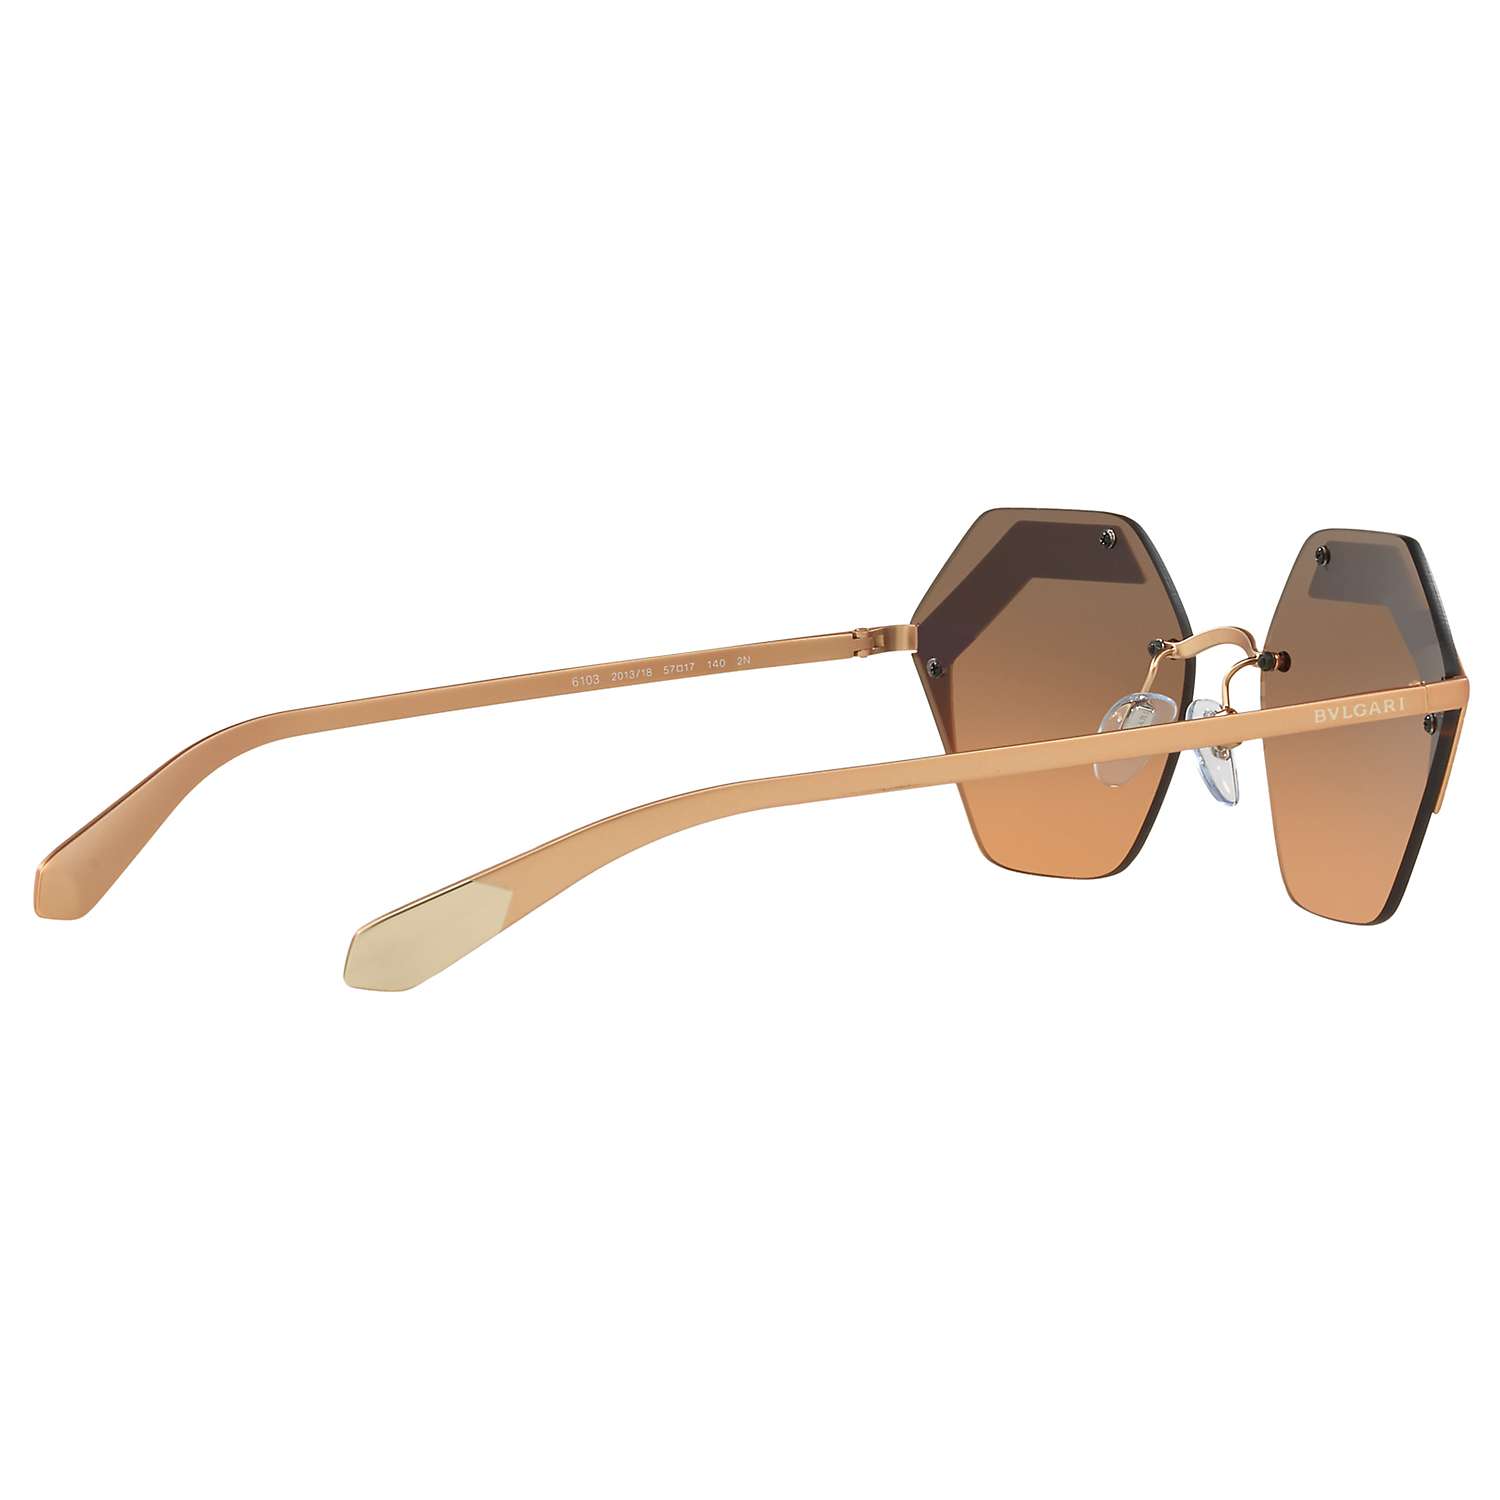 Buy BVLGARI BV6103 Hexagonal Sunglasses, Rose Gold/Grey Gradient Online at johnlewis.com